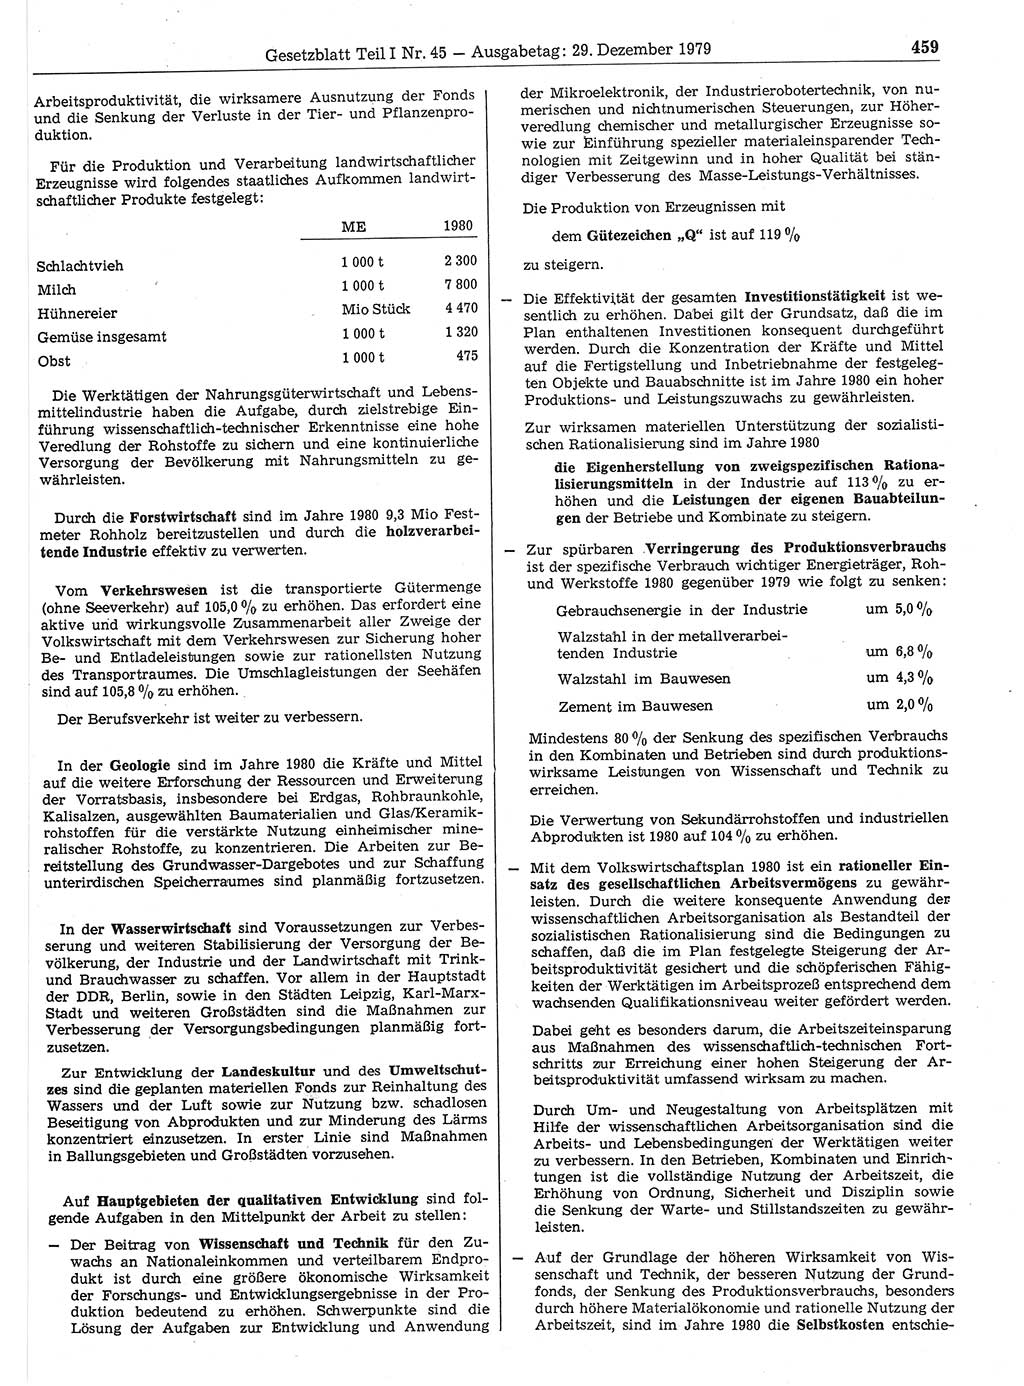 Gesetzblatt (GBl.) der Deutschen Demokratischen Republik (DDR) Teil Ⅰ 1979, Seite 459 (GBl. DDR Ⅰ 1979, S. 459)